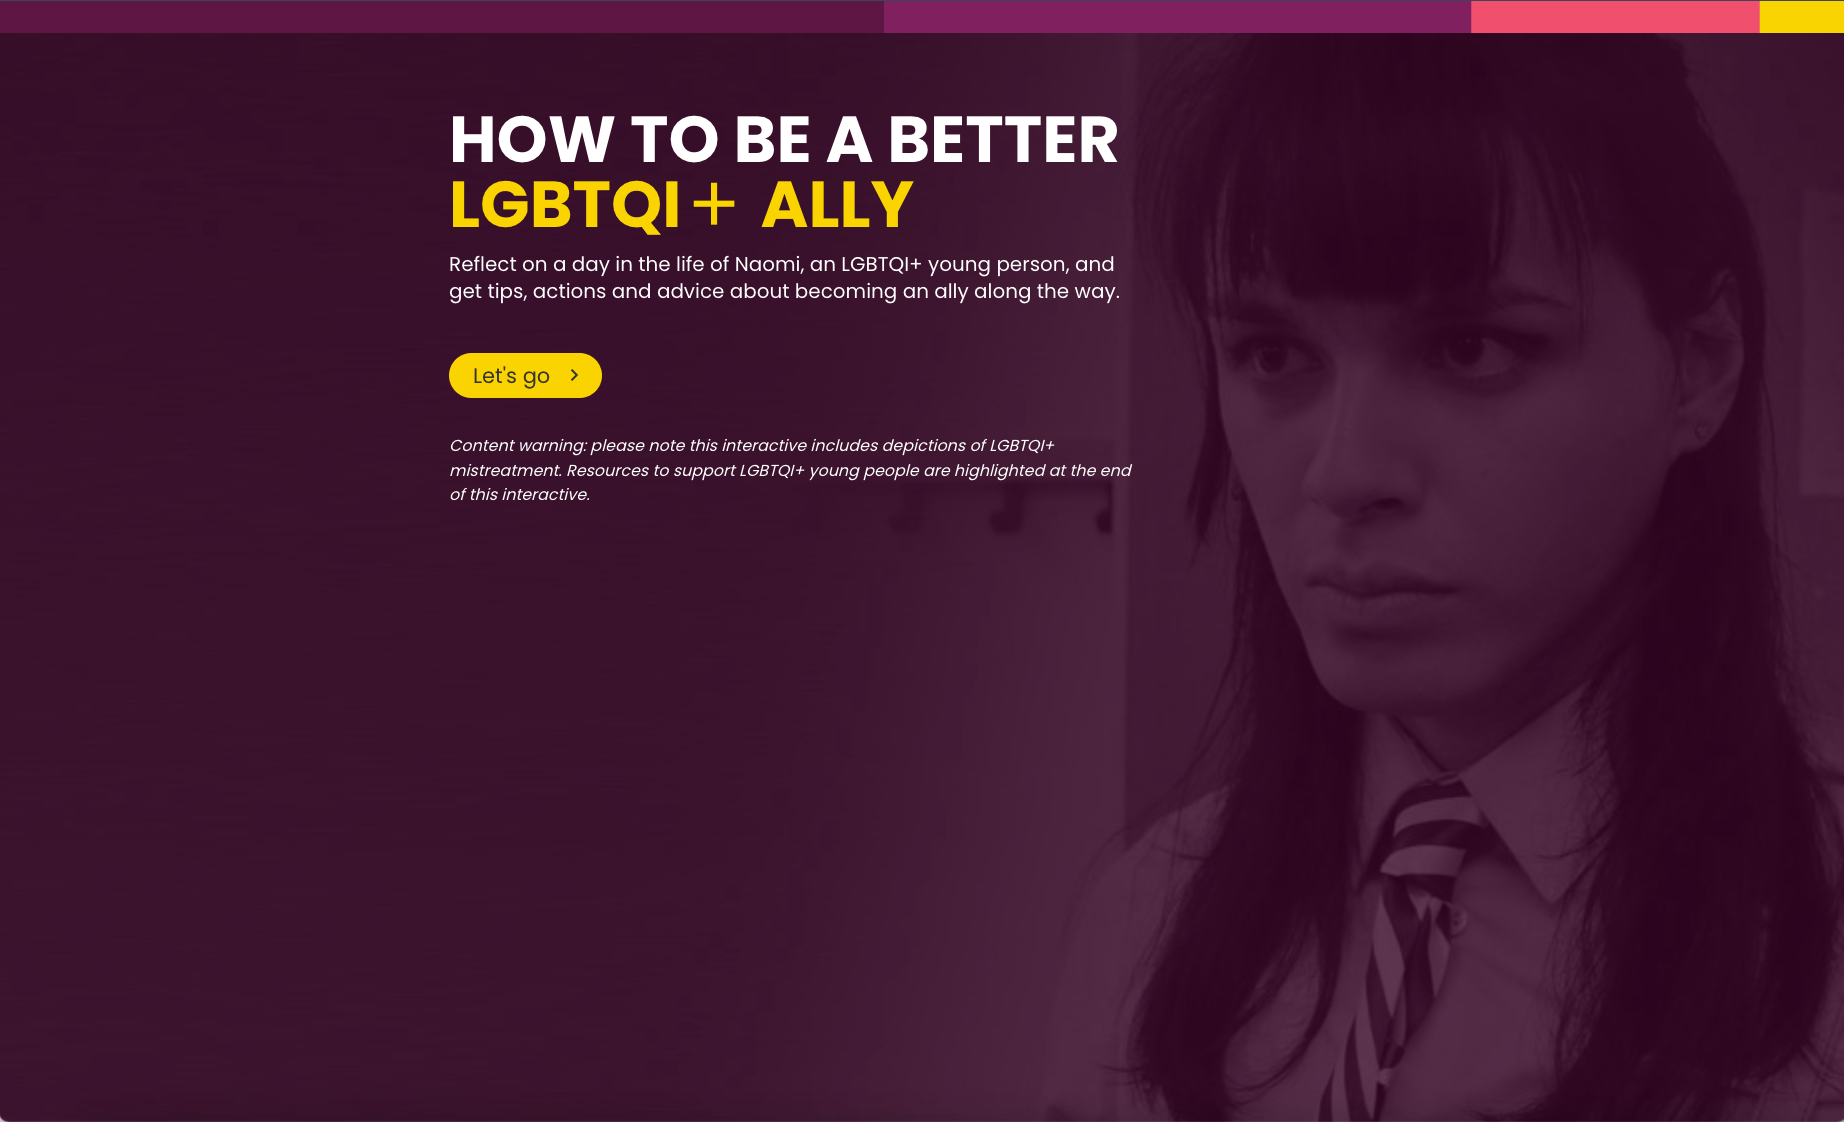 LGBTQI+ ally